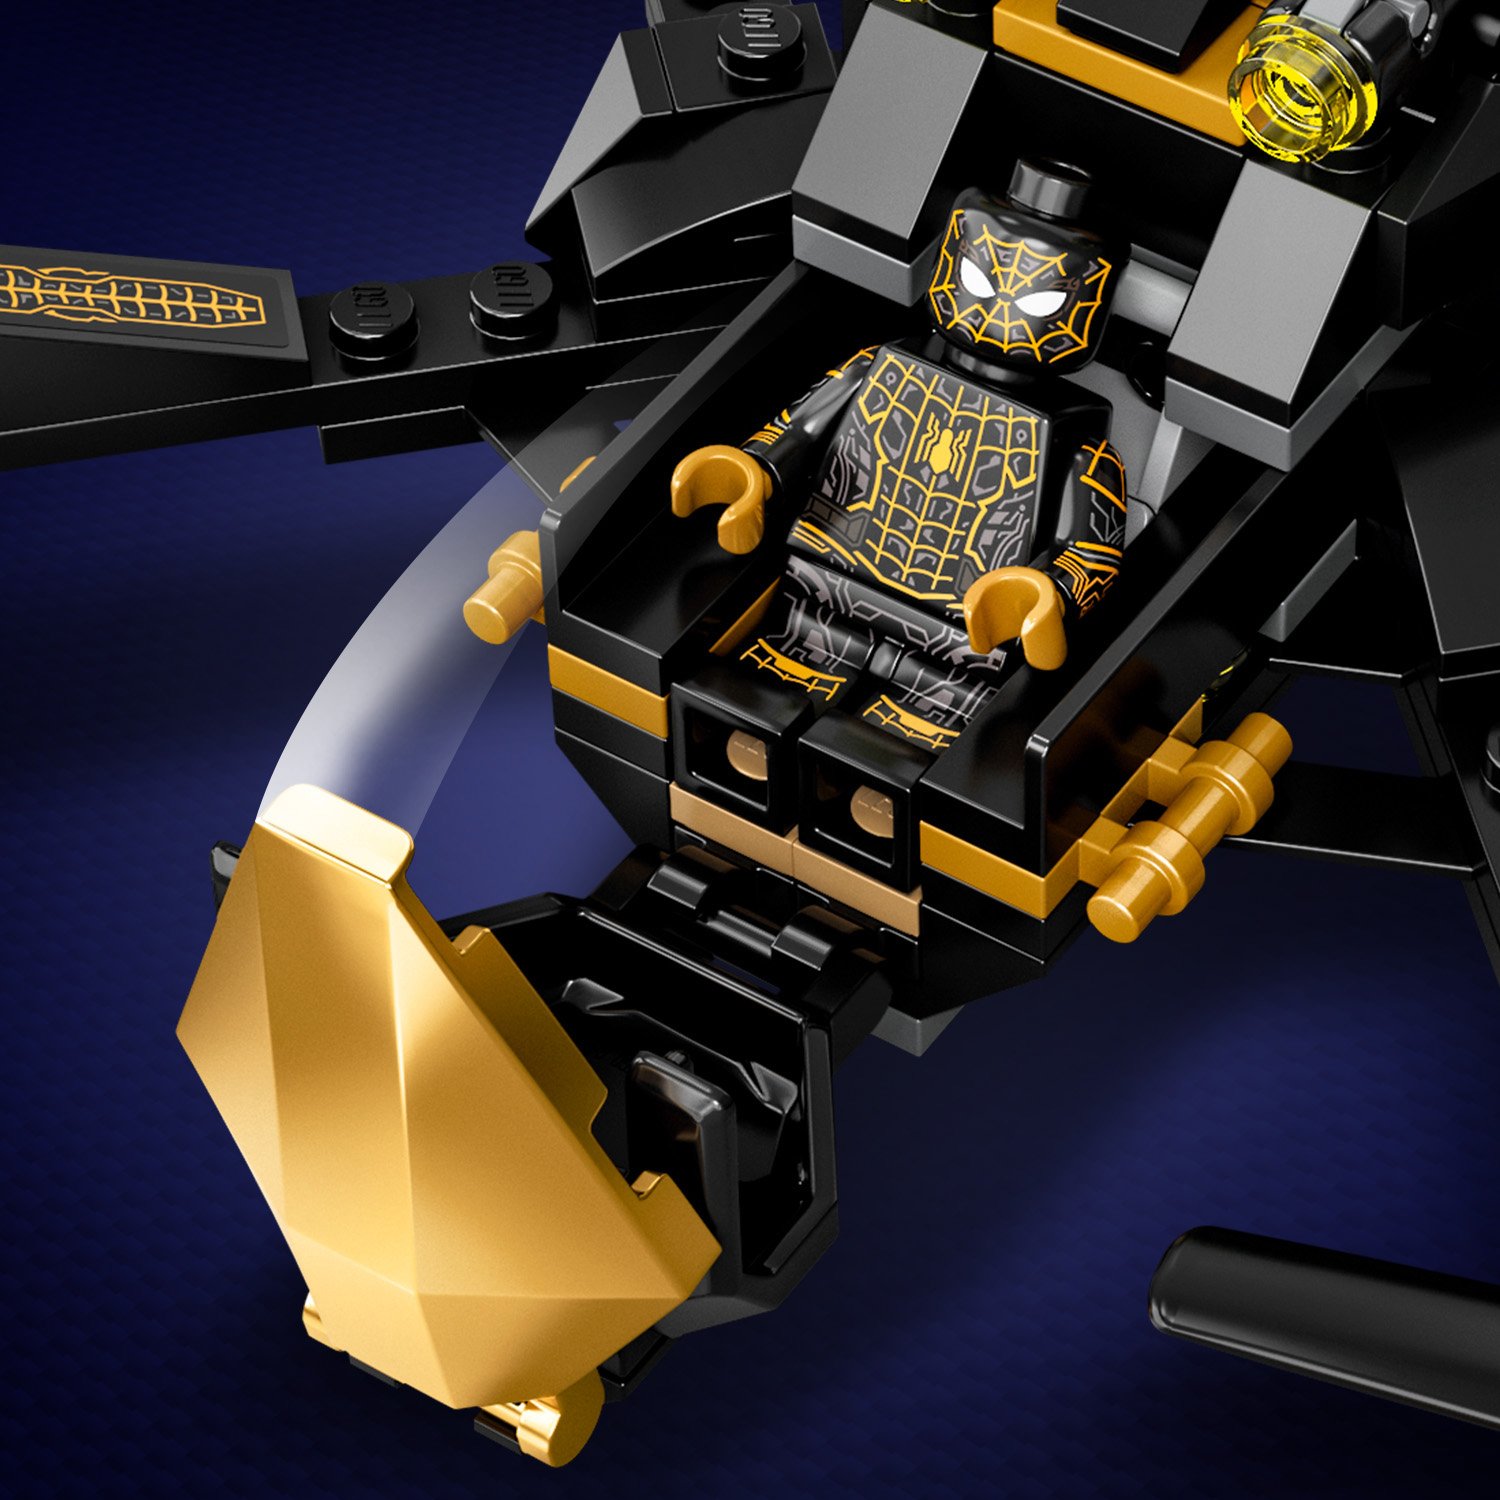 Конструктор LEGO Super Heroes Дуэль дронов Человека-паука 76195